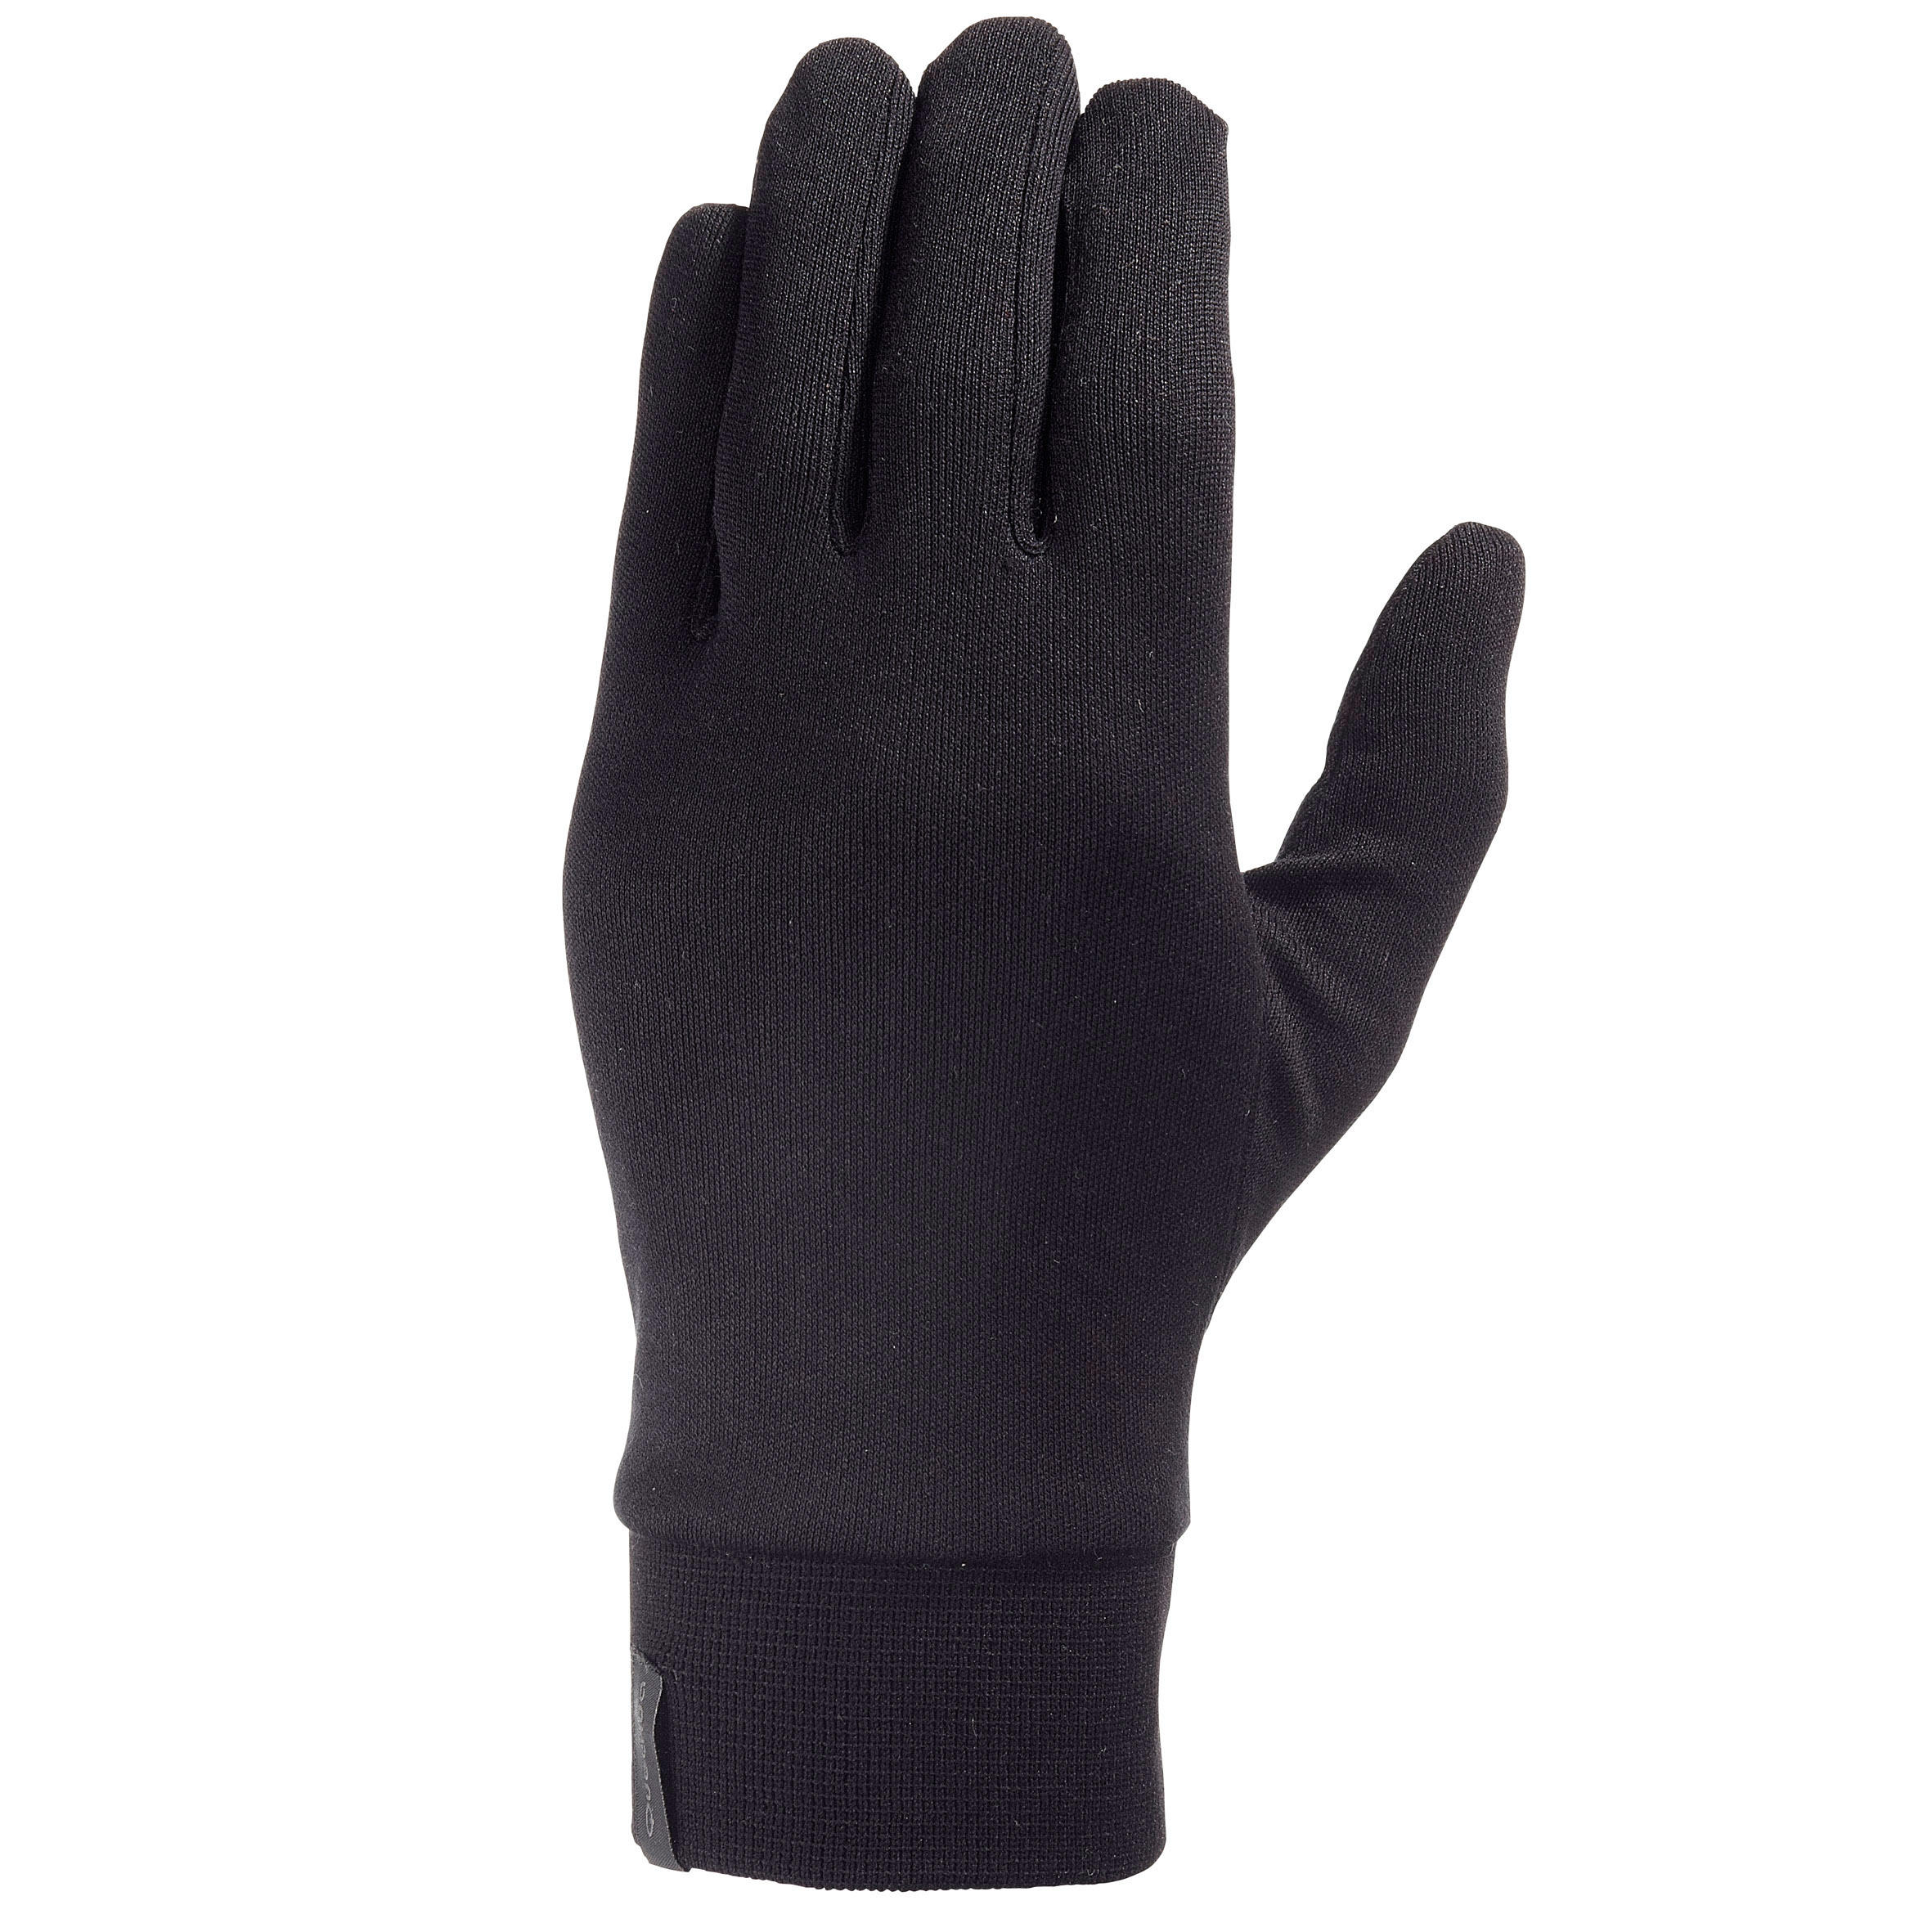 Нижние перчатки купить. Перчатки Forclaz Trek 500. Quechua self Heat System мужские перчатки. Перчатки Quechua комбинированные. Перчатки Decathlon Wedze.